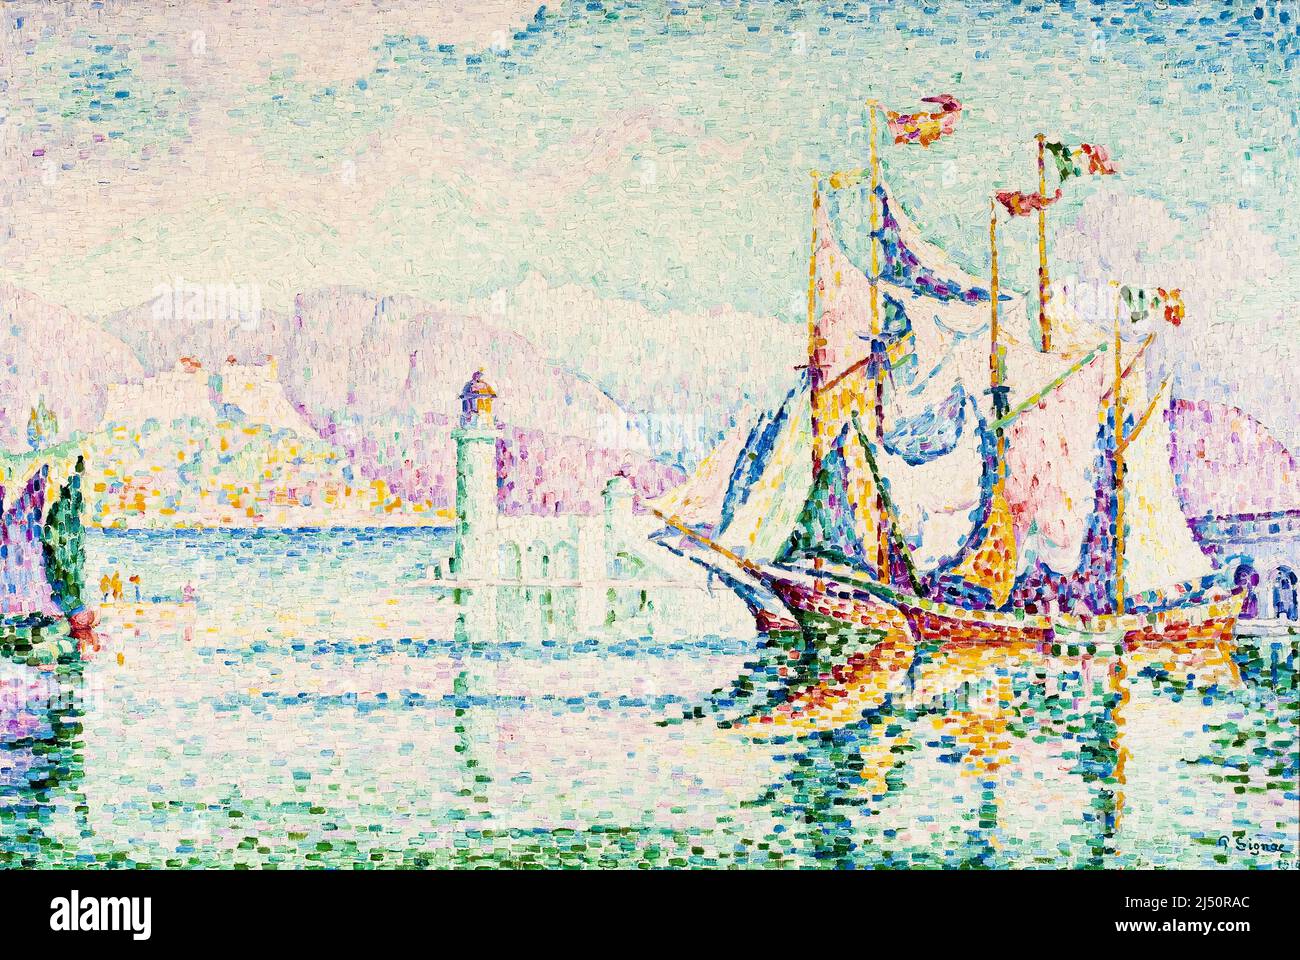 Paul Signac, Antibes, matin, peinture à l'huile sur toile, 1914 Banque D'Images